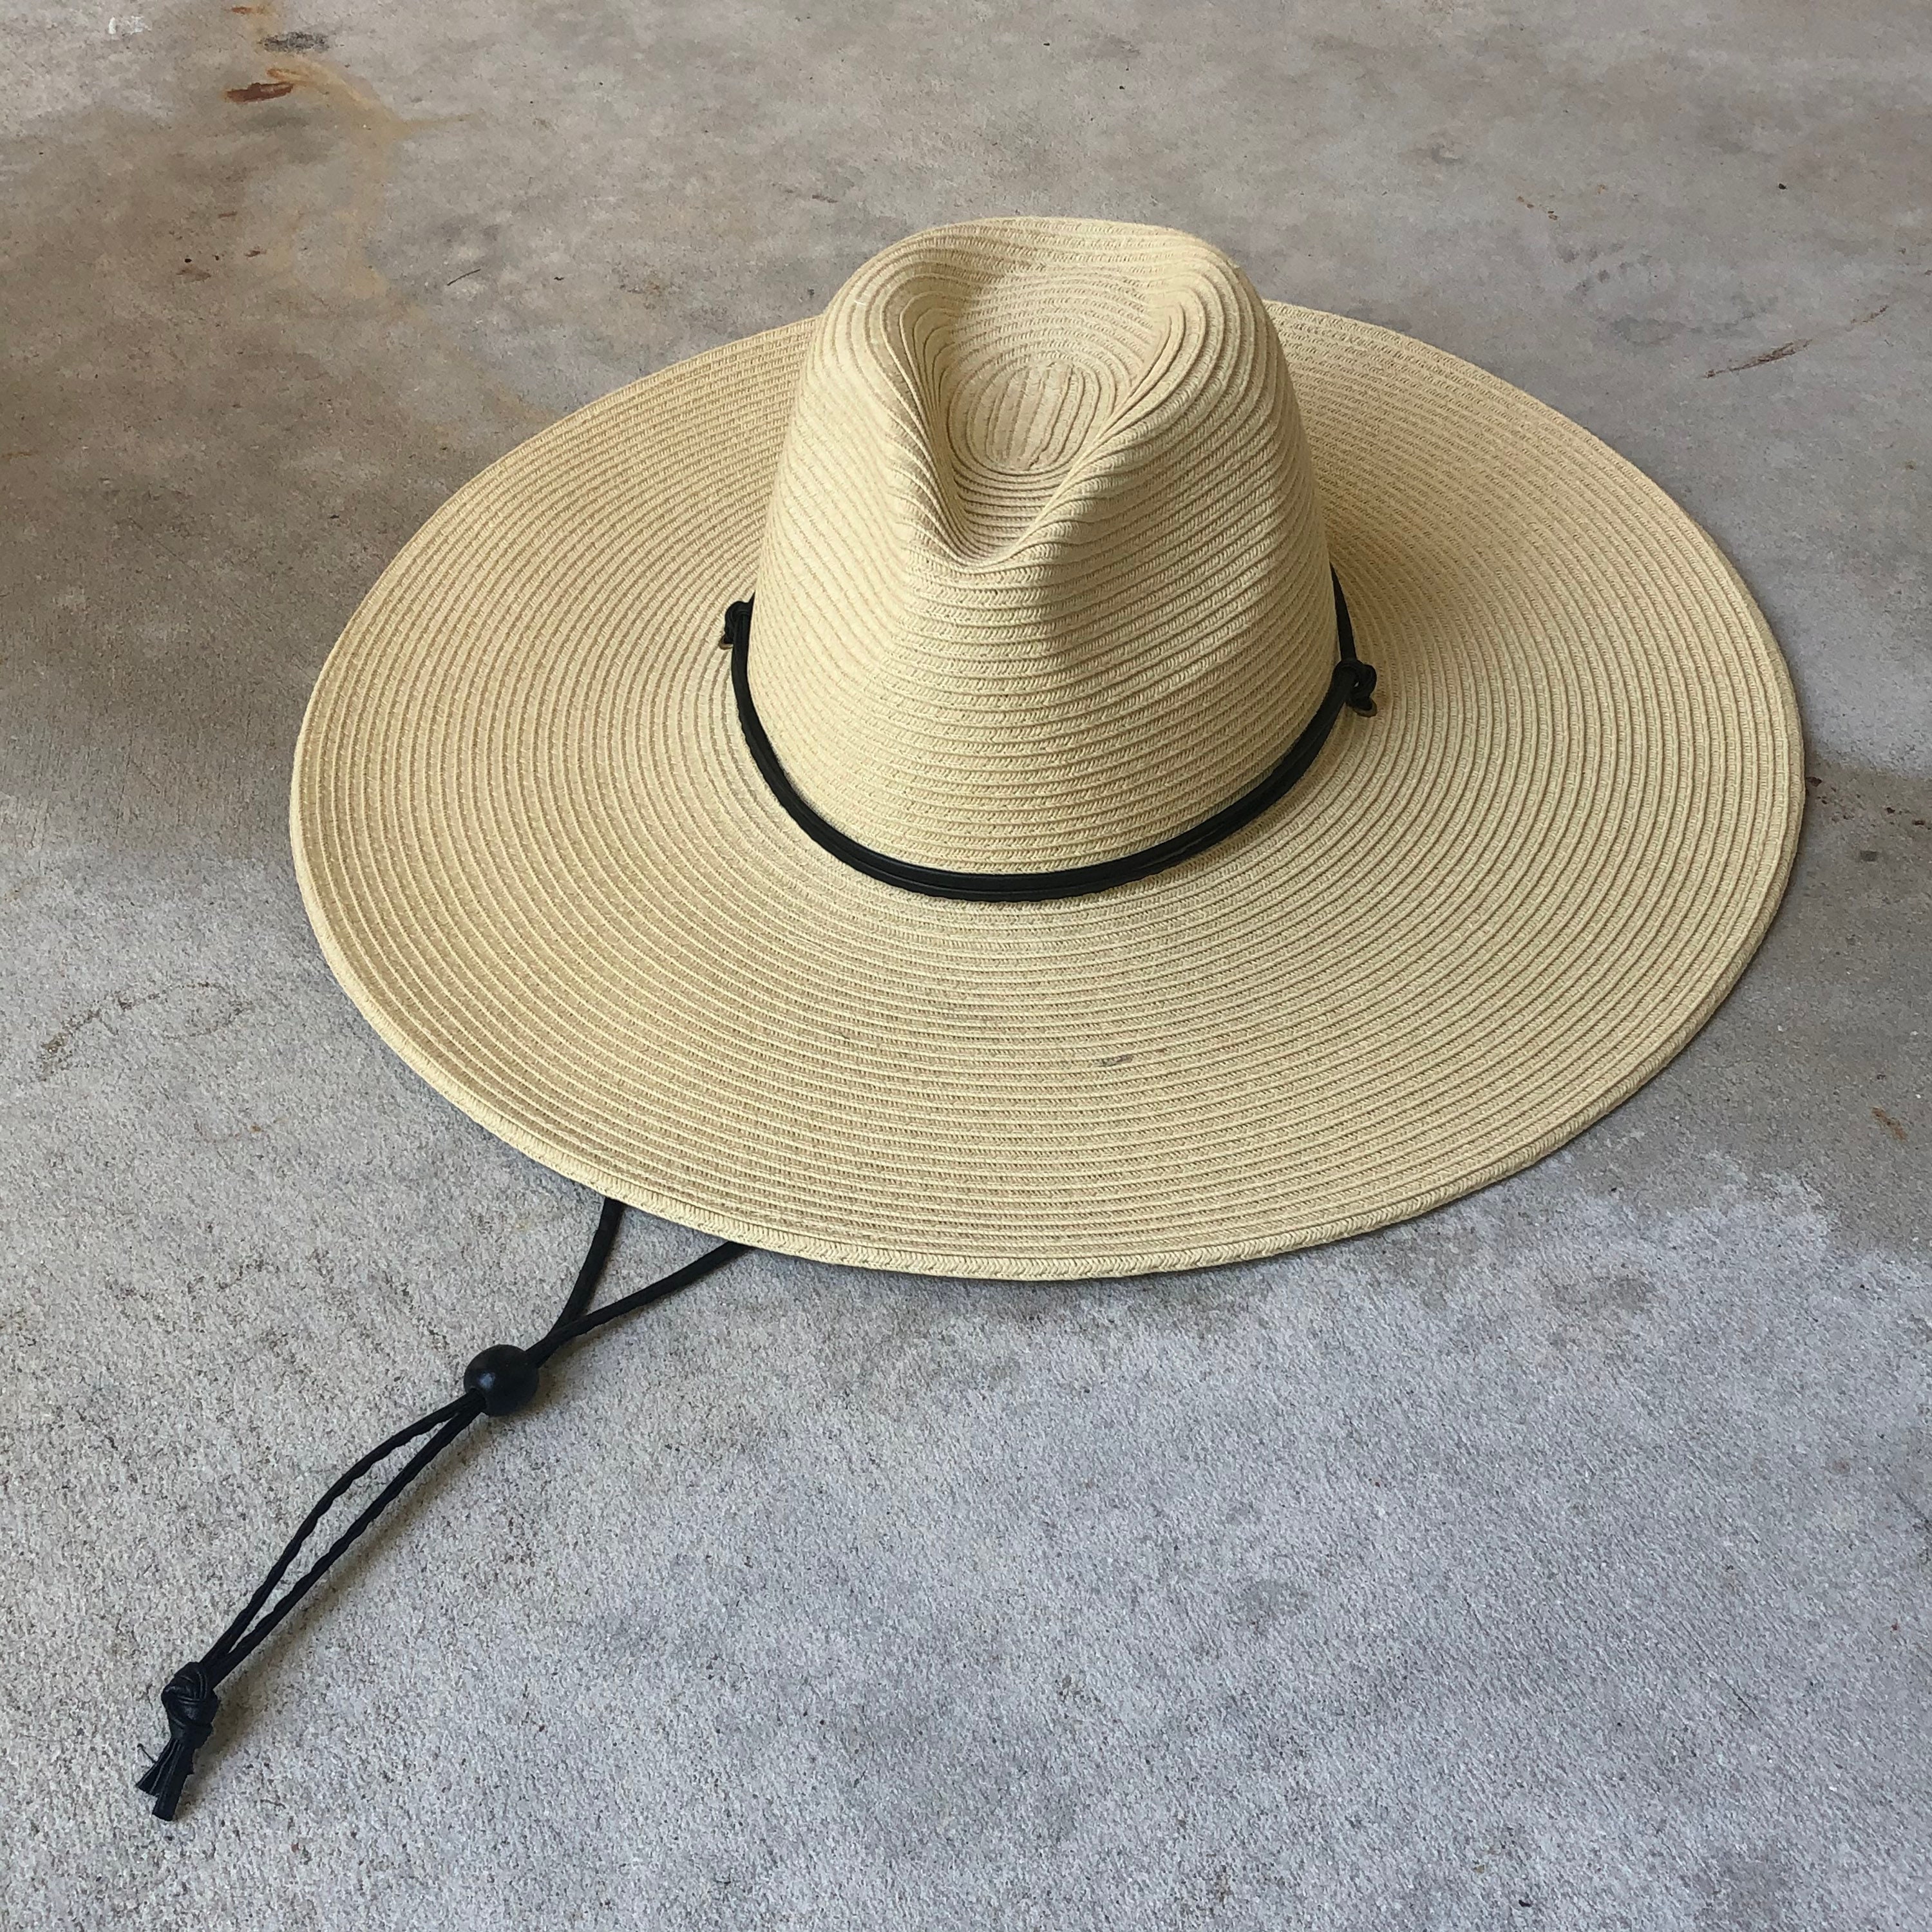 Baby Toddler Kid Children Sun Straw Western Cowboy Hat Wide Brim With Chin Strap 